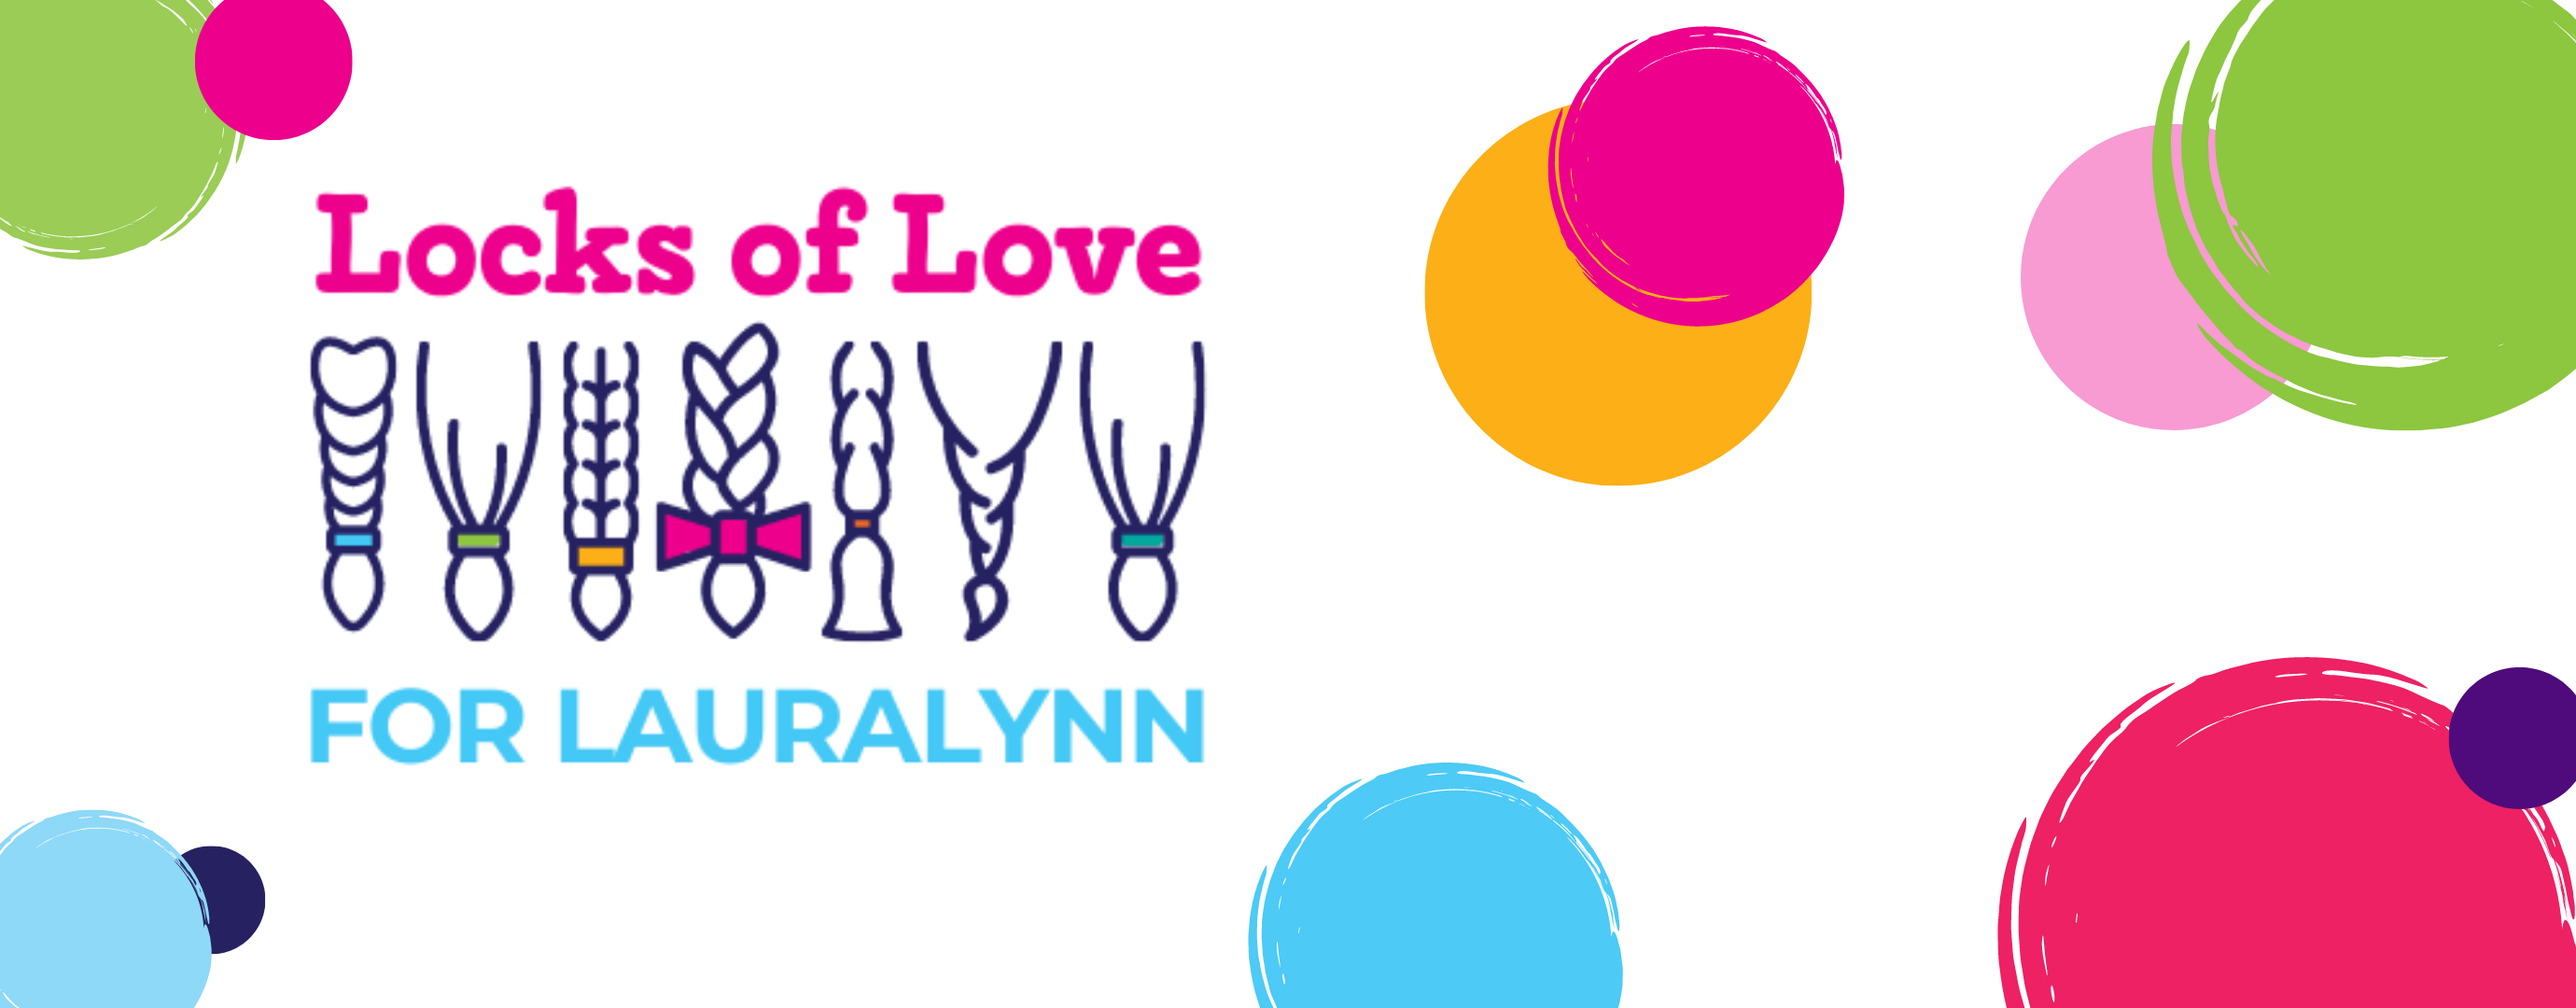 Locks of Love for LauraLynn | LauraLynn